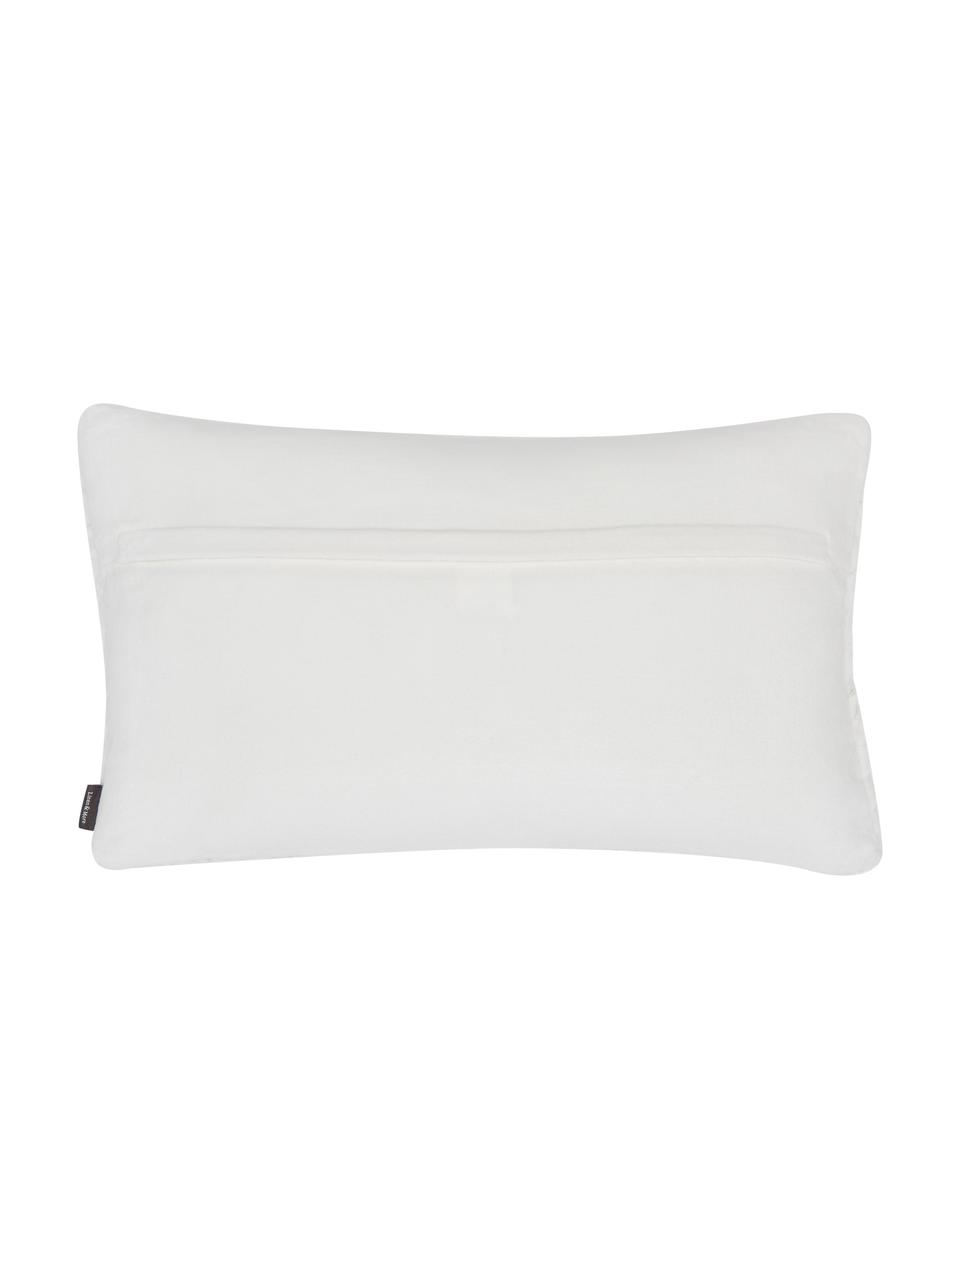 Cuscino in velluto bianco con imbottitura Smock, Rivestimento: 100% velluto di cotone, Bianco, Larg. 30 x Lung. 50 cm